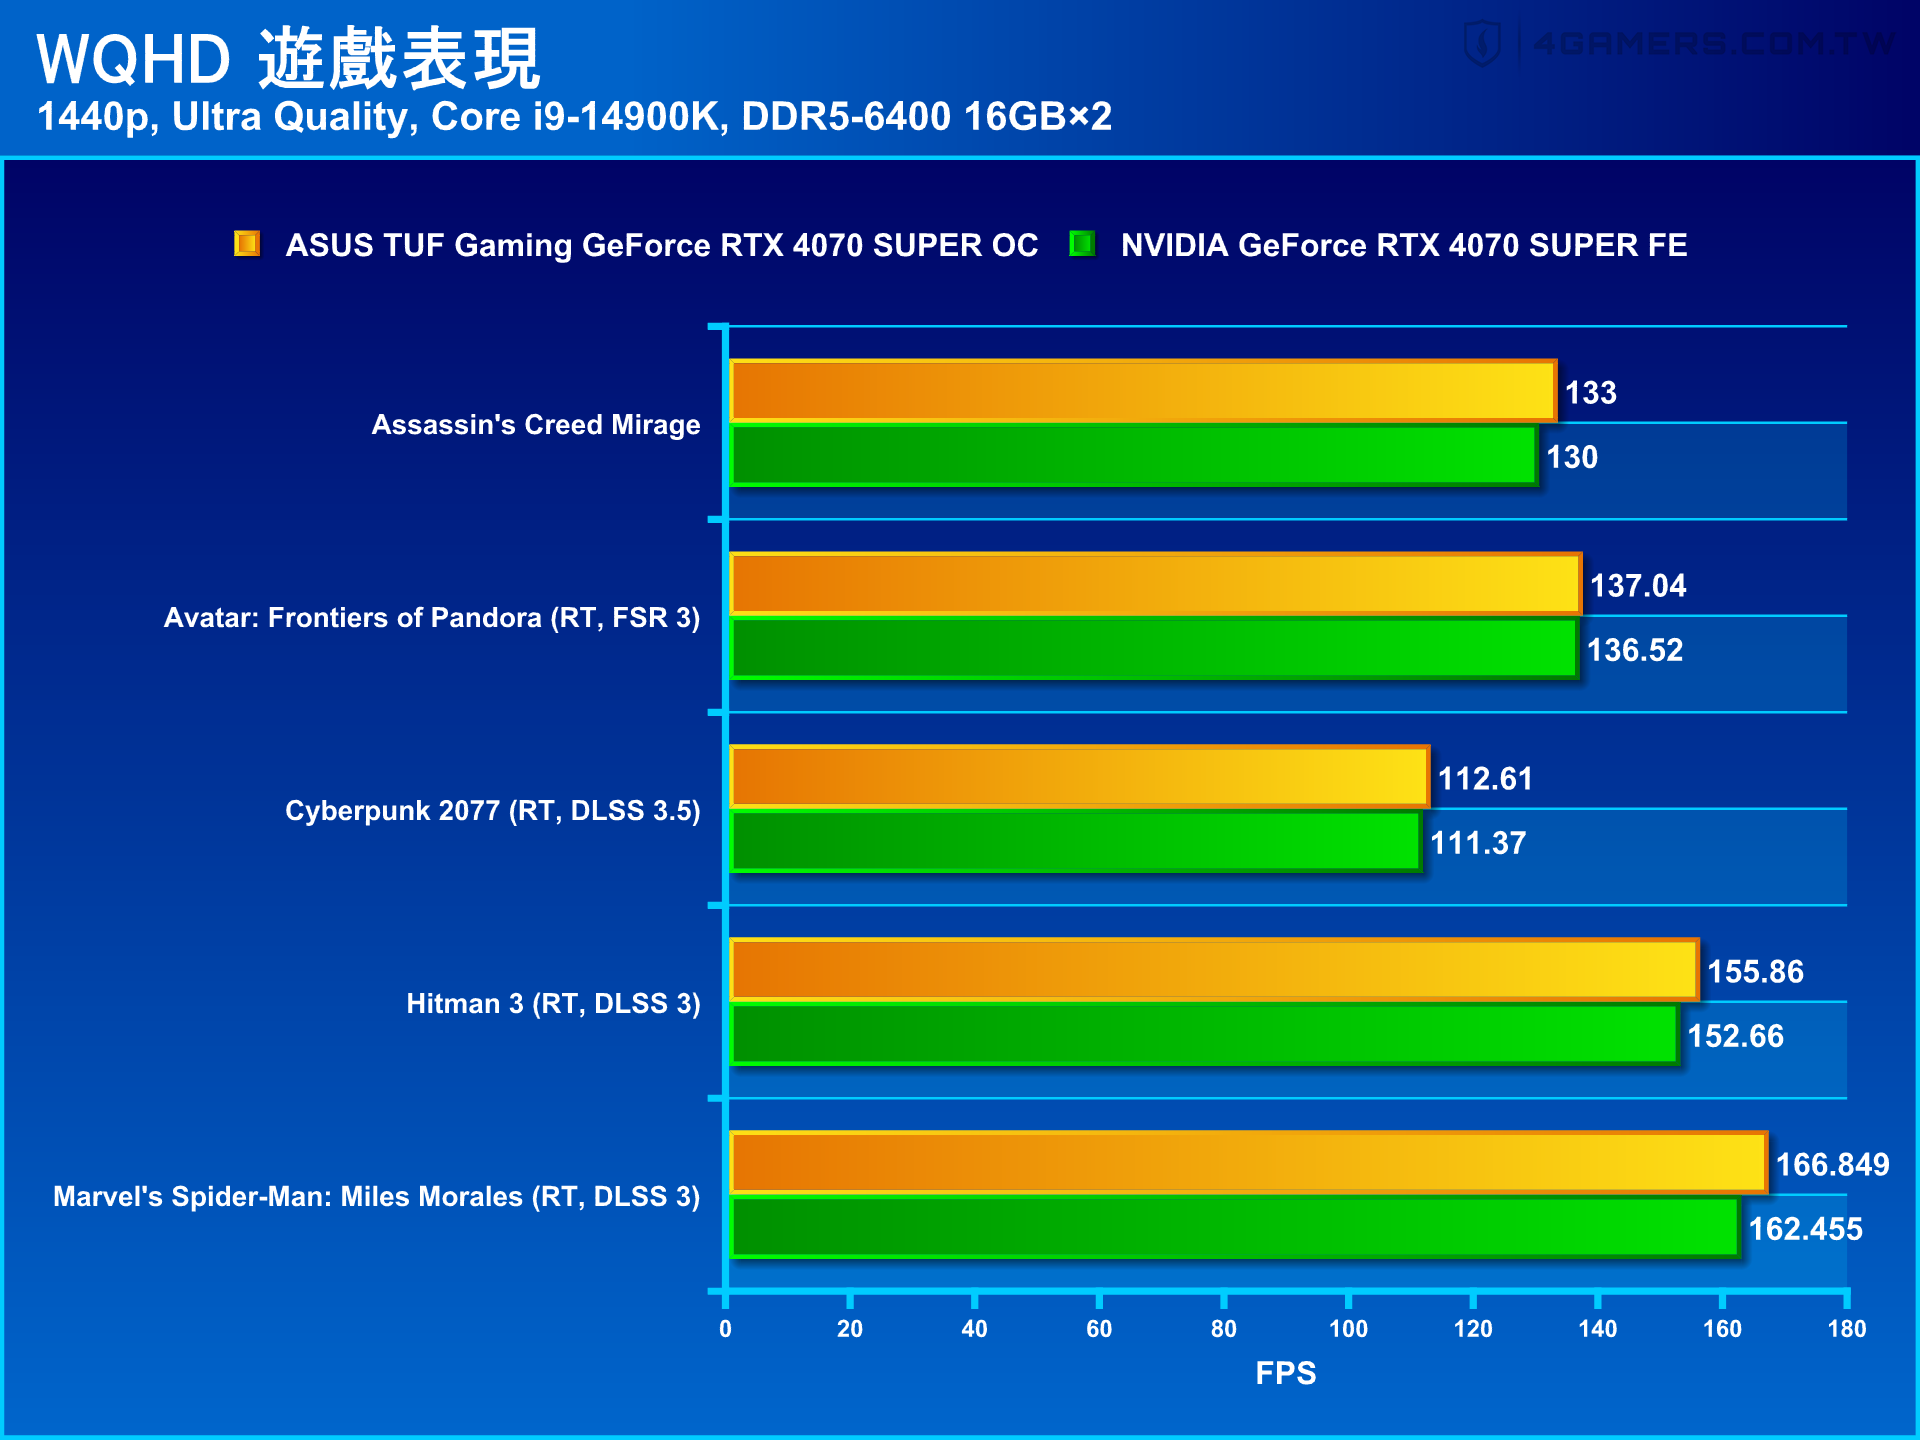 ASUS TUF Gaming GeForce RTX 4070 SUPER